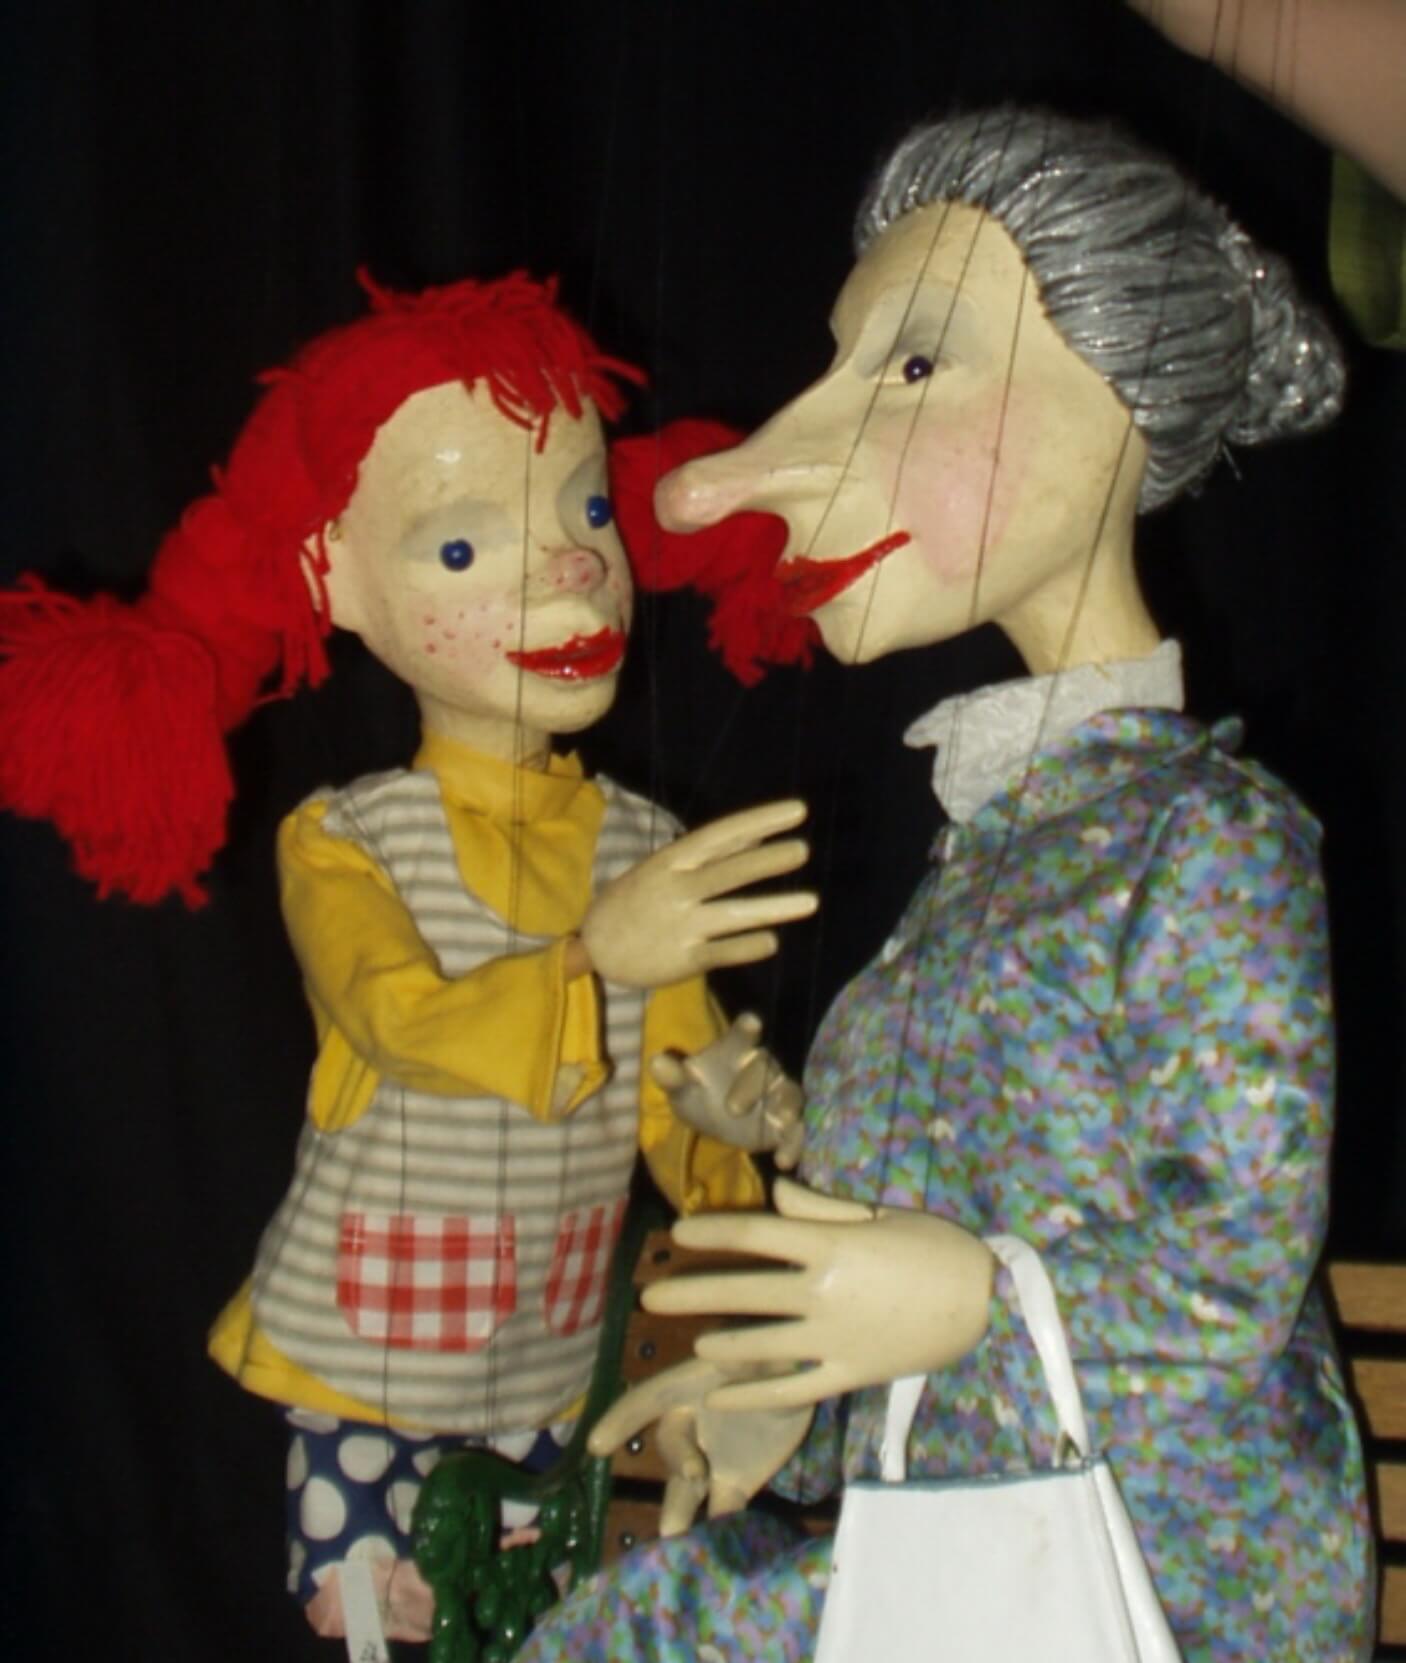 Foto: Die beiden Marionetten von Pippi Langstrumpf und Prysseliese.